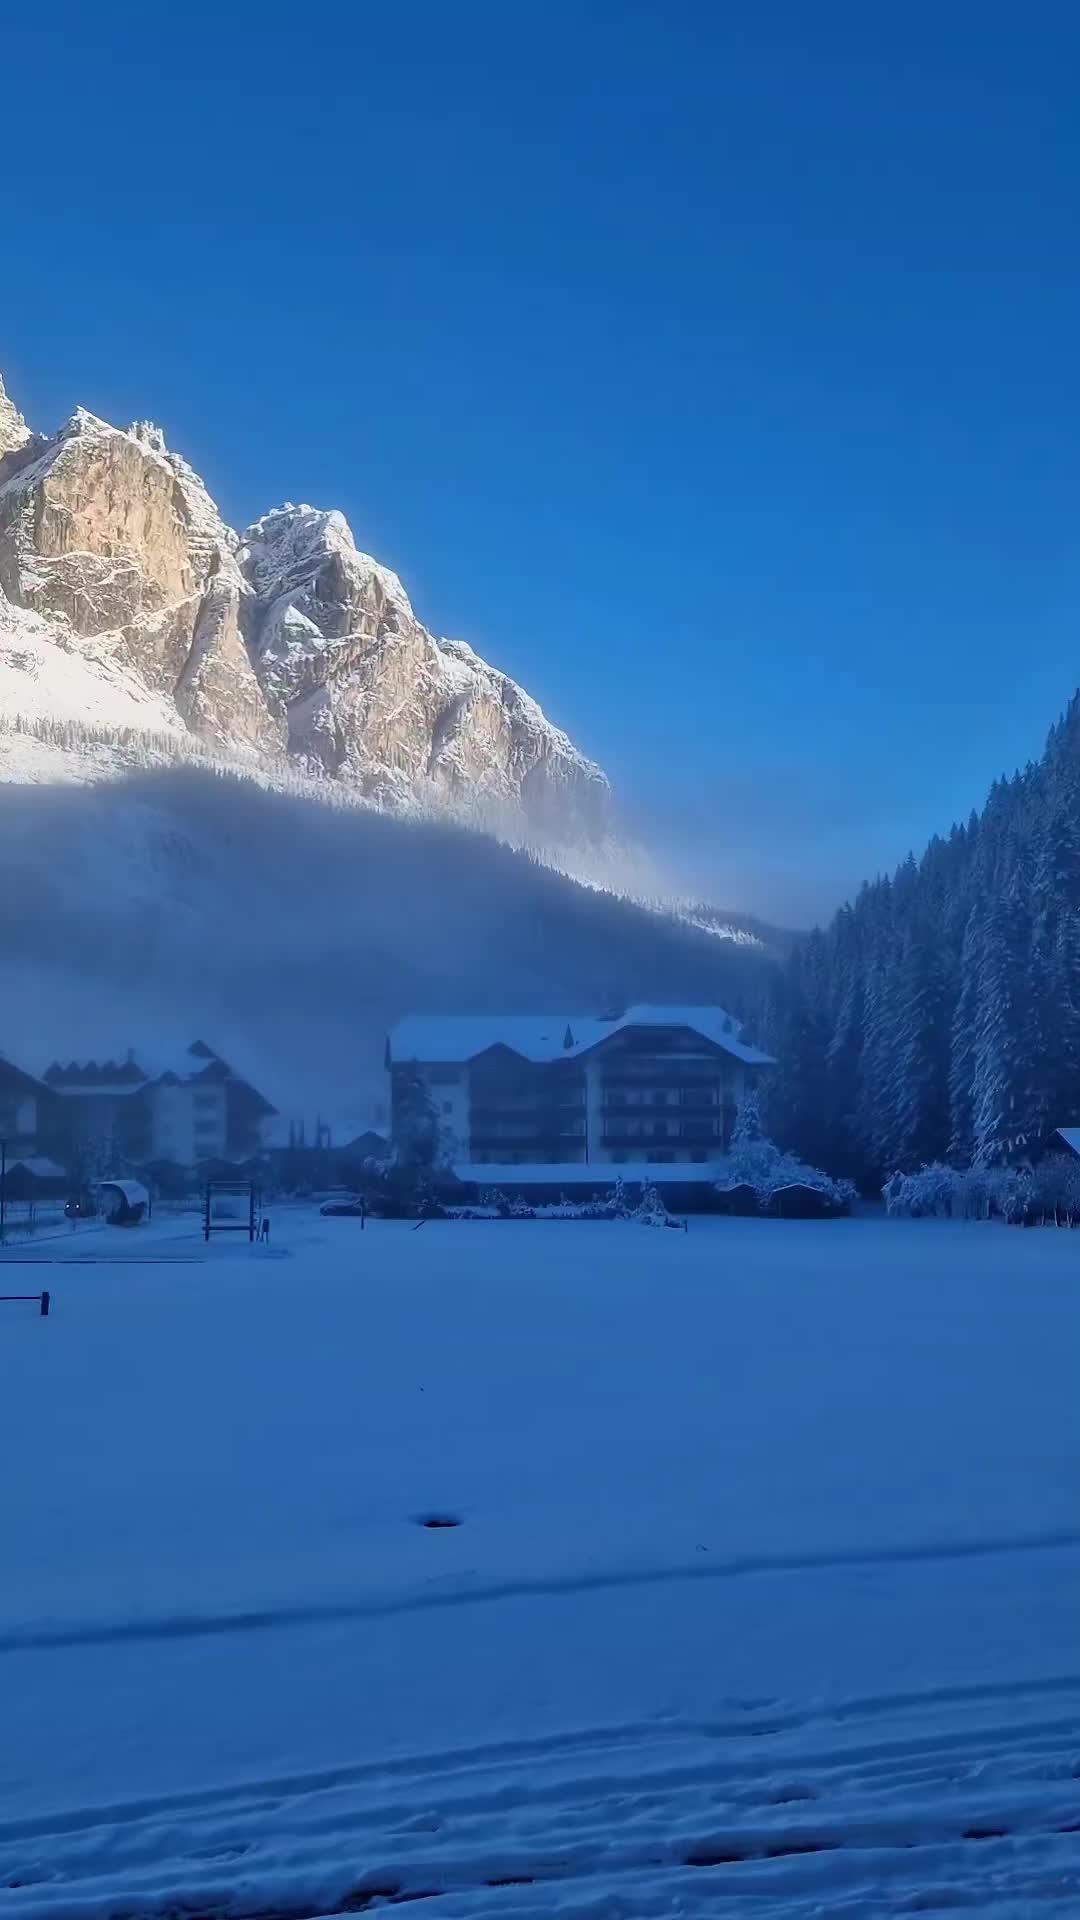 First Snow in Dolomites: A Winter Wonderland ❄️😍